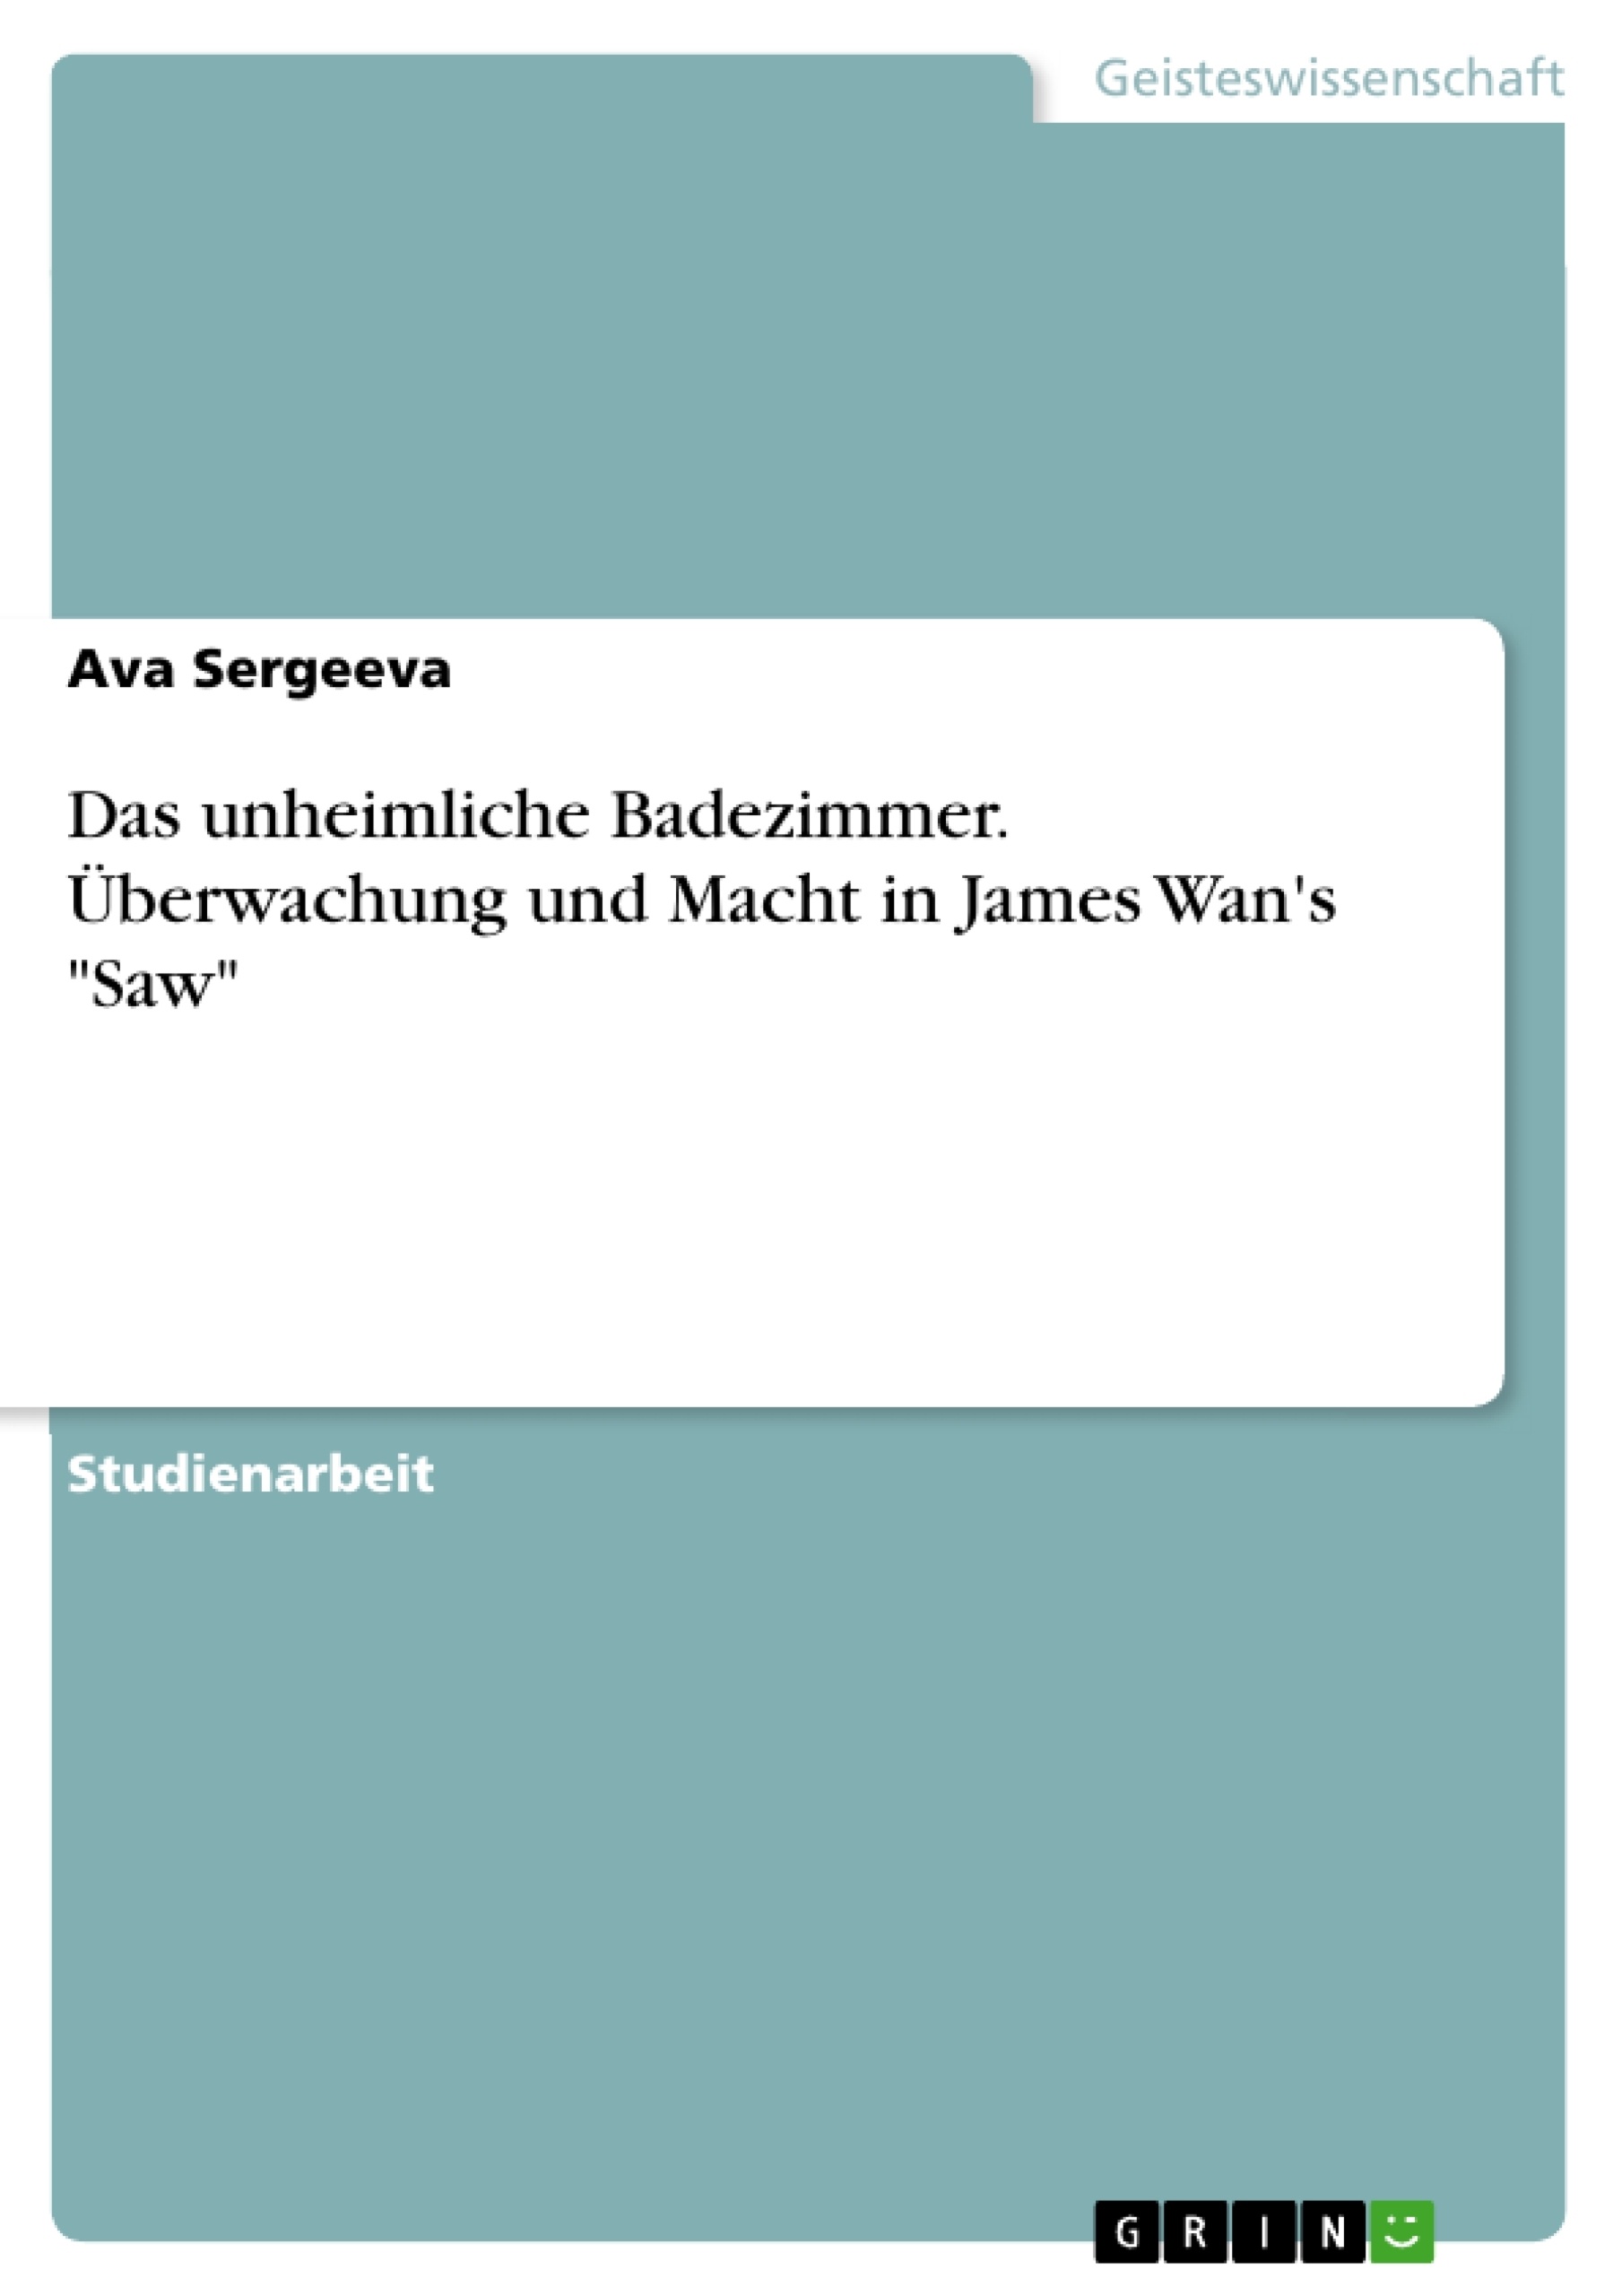 Title: Das unheimliche Badezimmer. Überwachung und Macht in James Wan's "Saw"